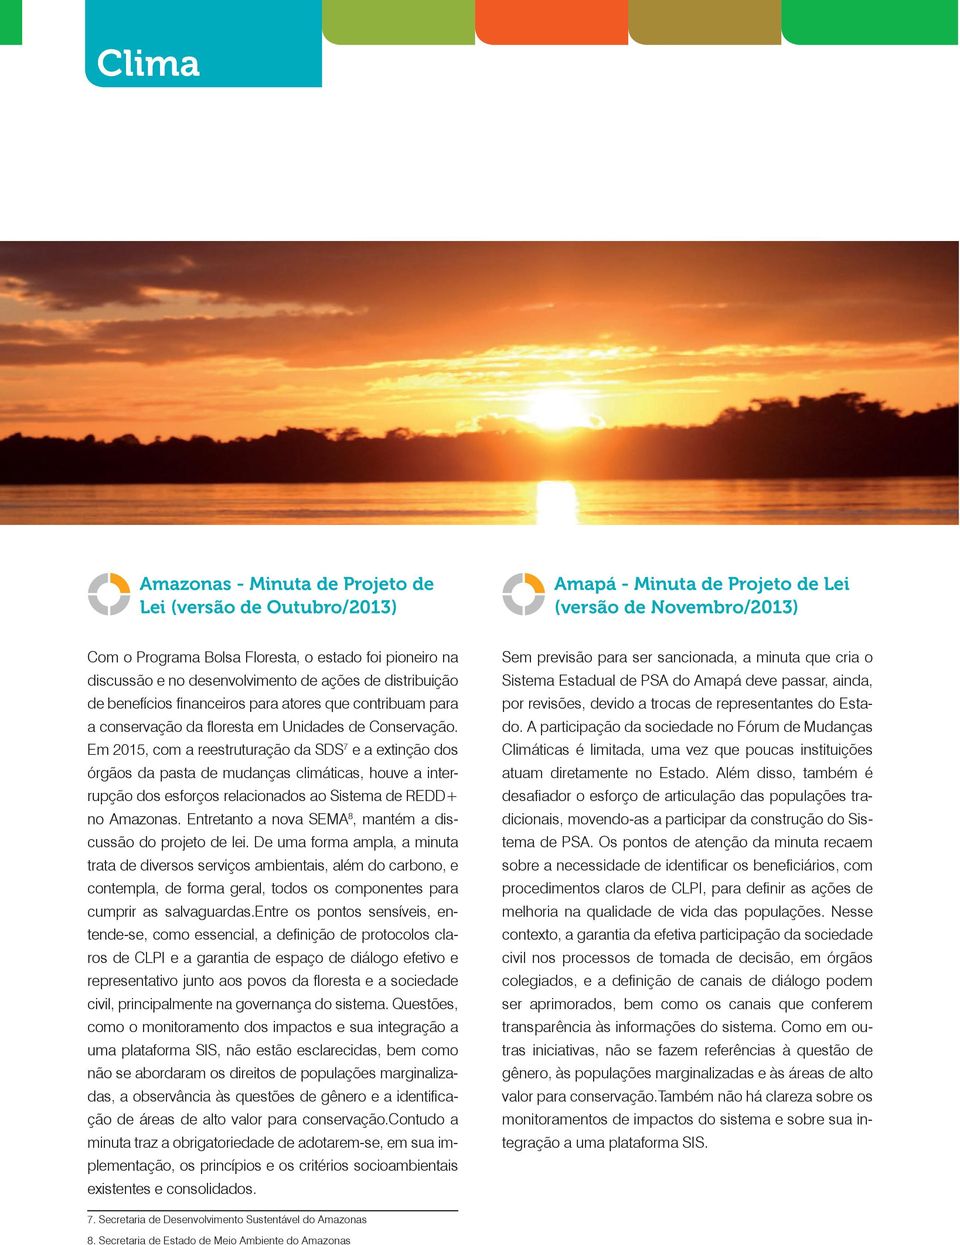 Em 2015, com a reestruturação da SDS 7 e a extinção dos órgãos da pasta de mudanças climáticas, houve a interrupção dos esforços relacionados ao Sistema de REDD+ no Amazonas.